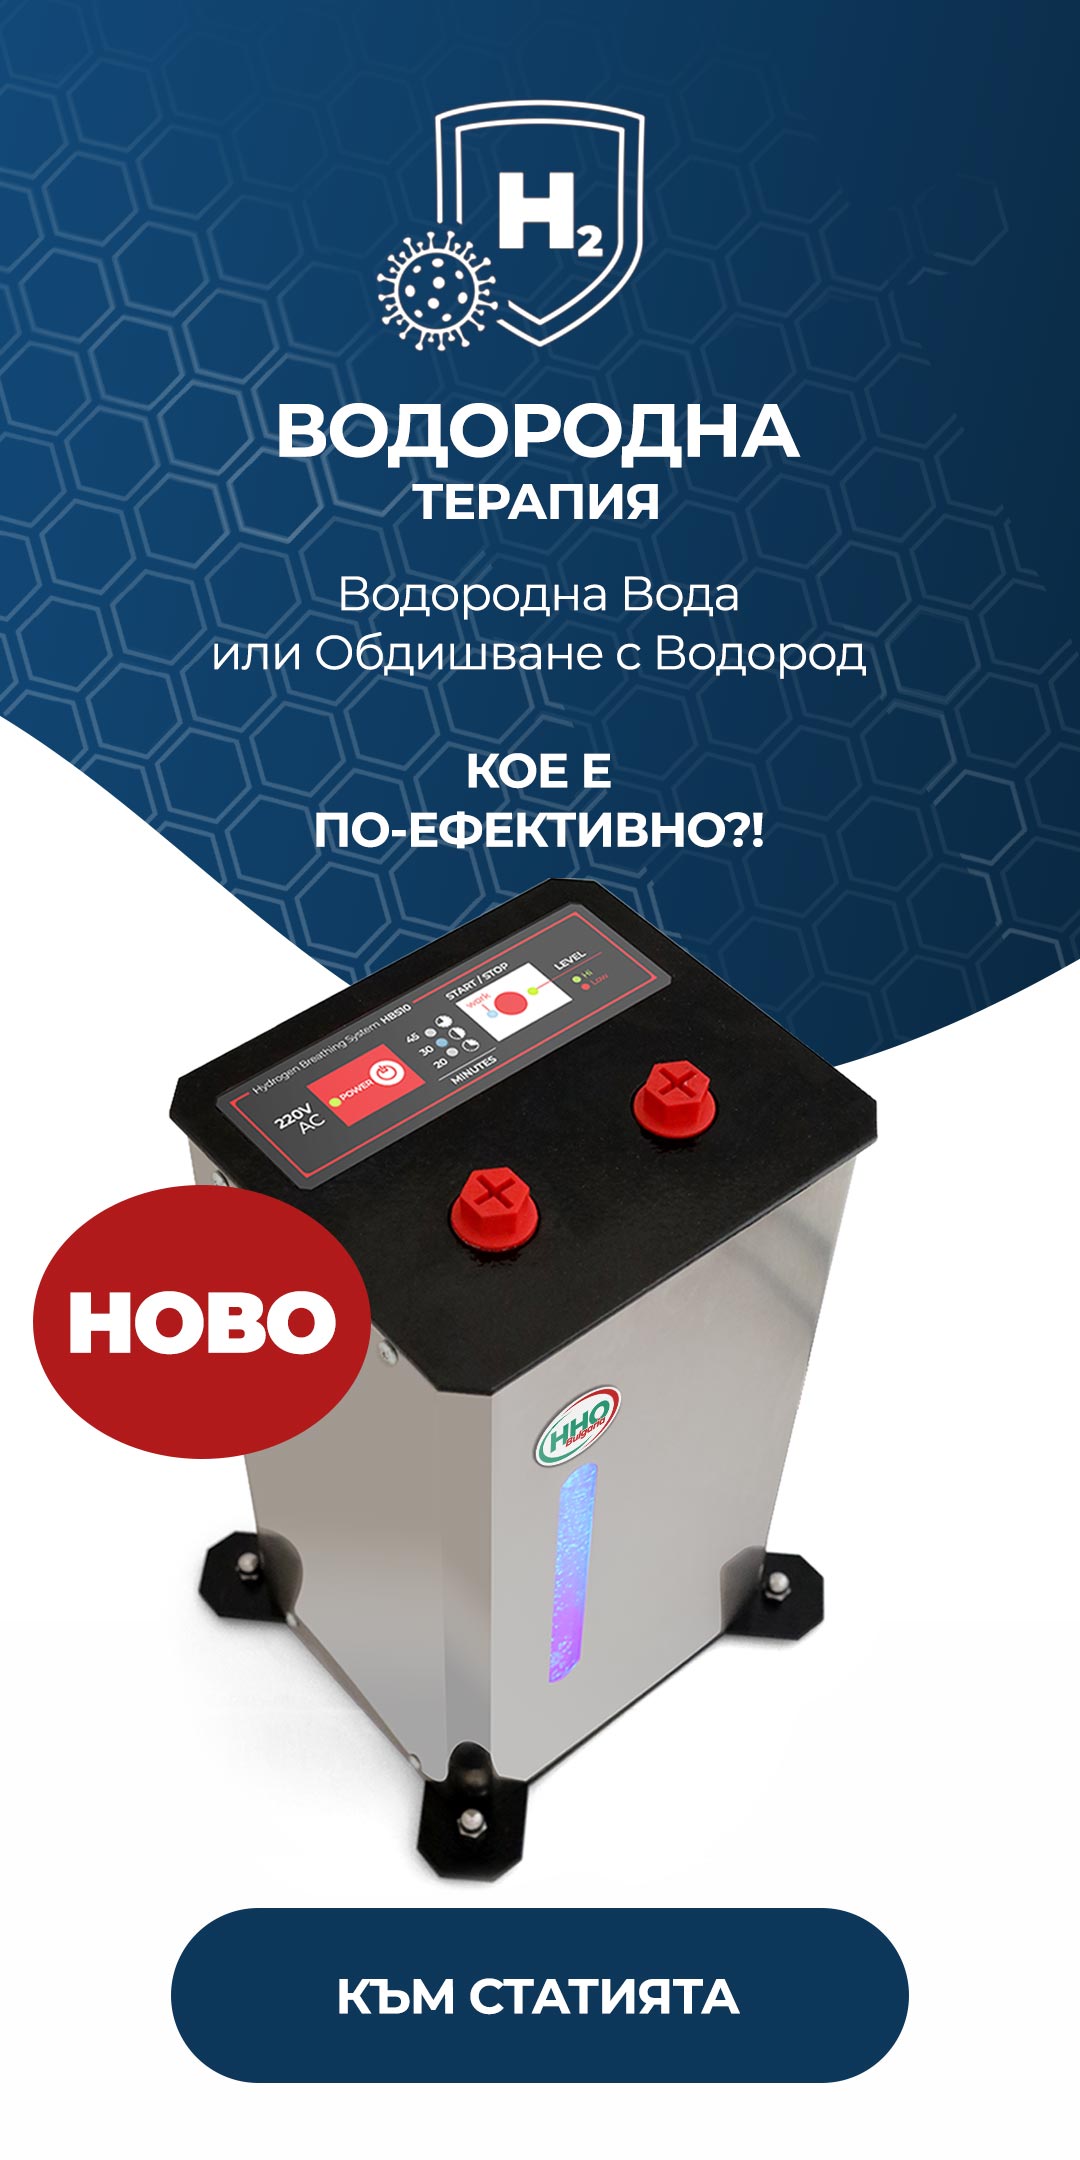 Апарат за Водородна Терапия - Водородна Вода или Обдишване с Водород